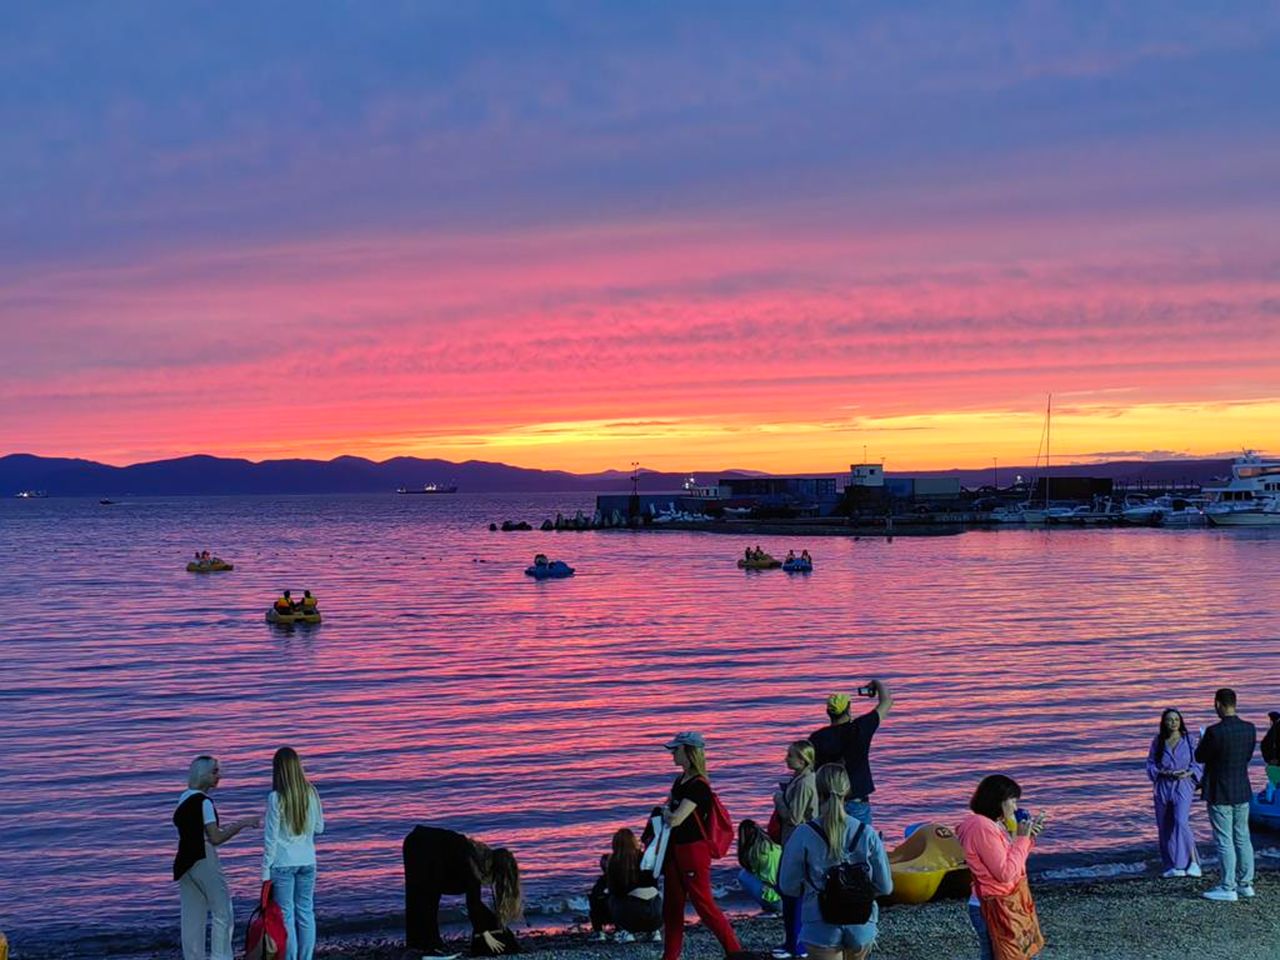 Владивосток на закате солнца | Цена 2800₽, отзывы, описание экскурсии